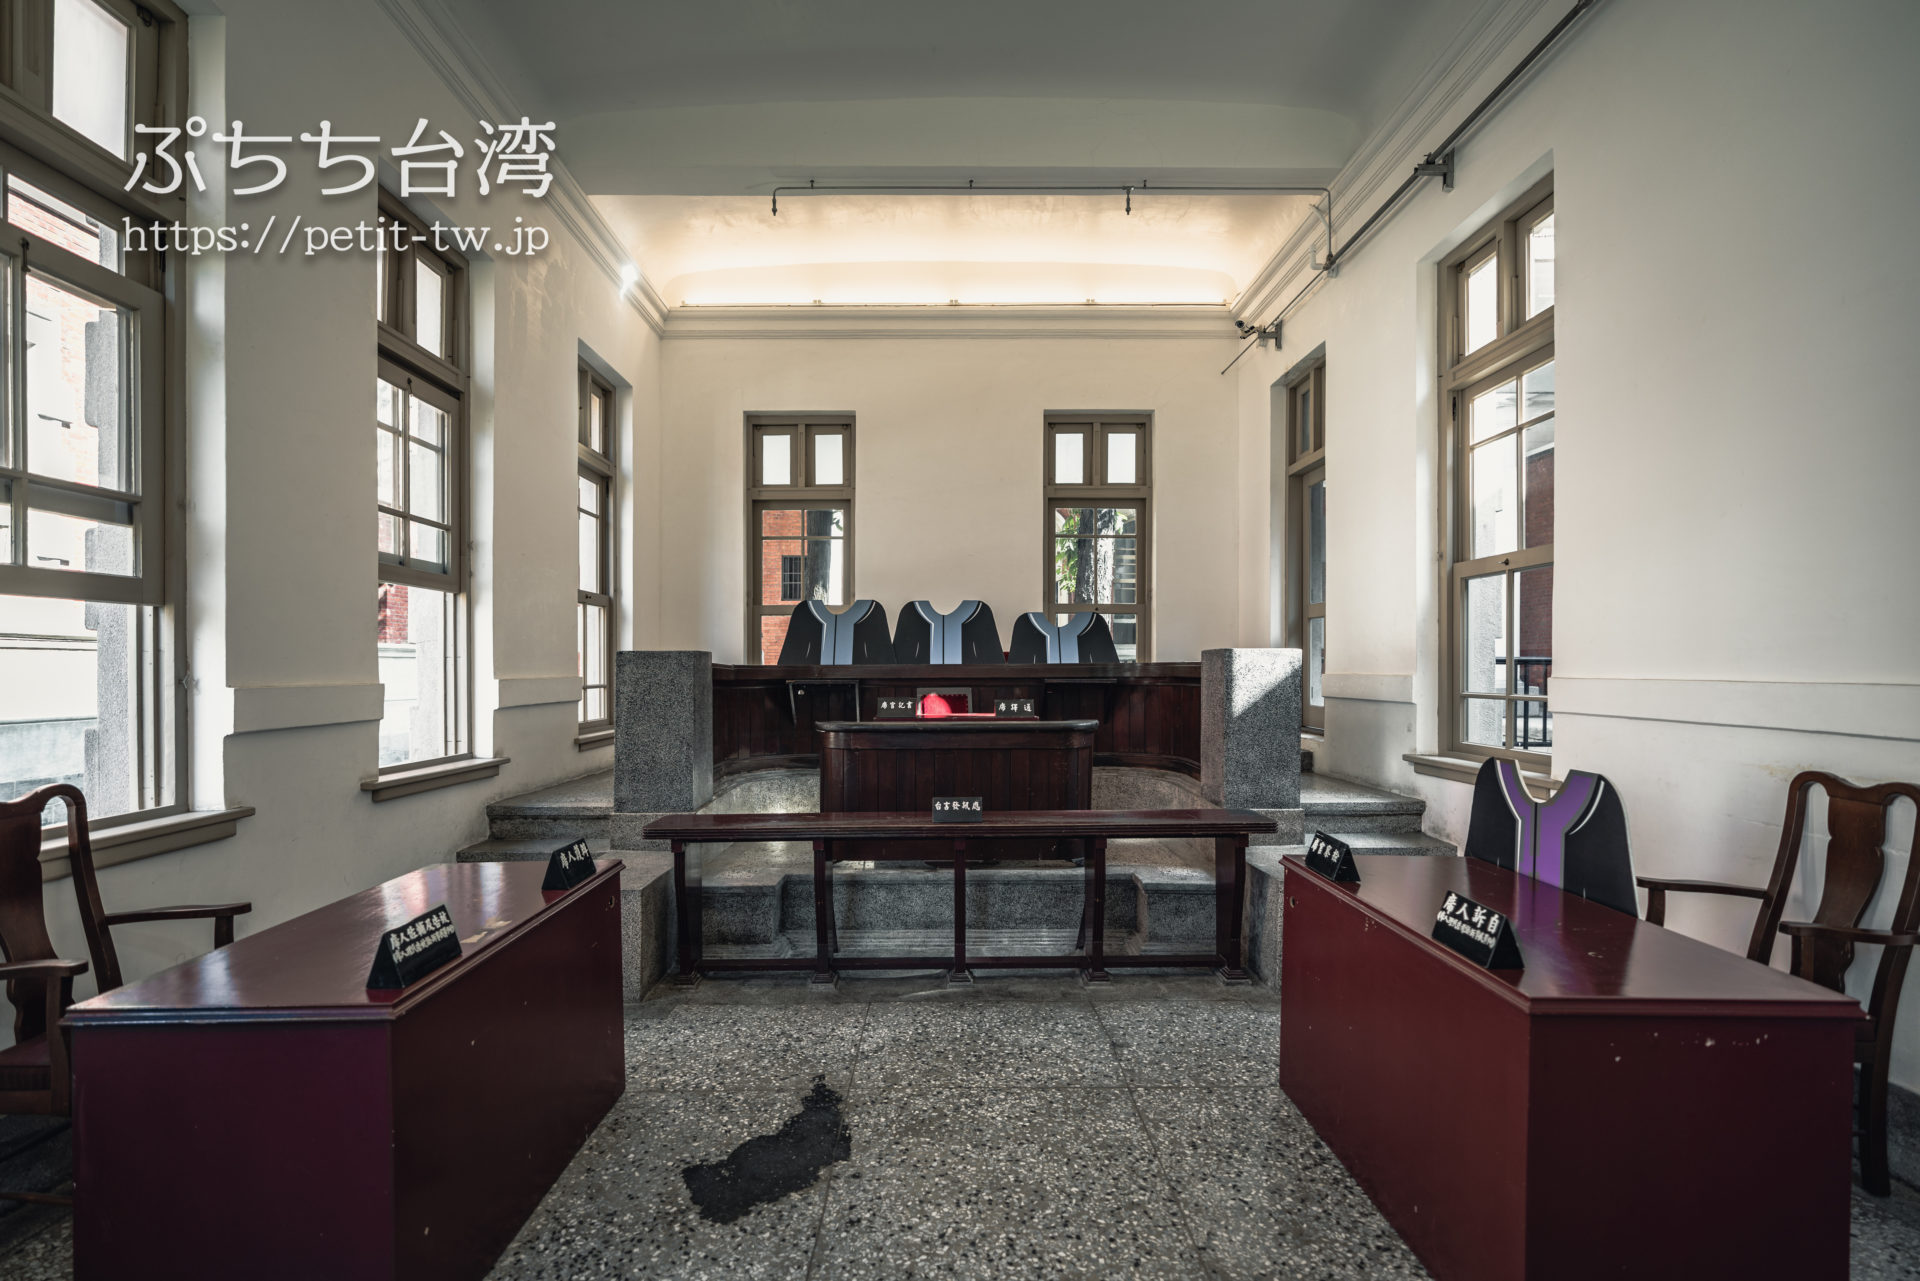 国定古跡台南地方法院（旧台南地方法院）の法廷展示室